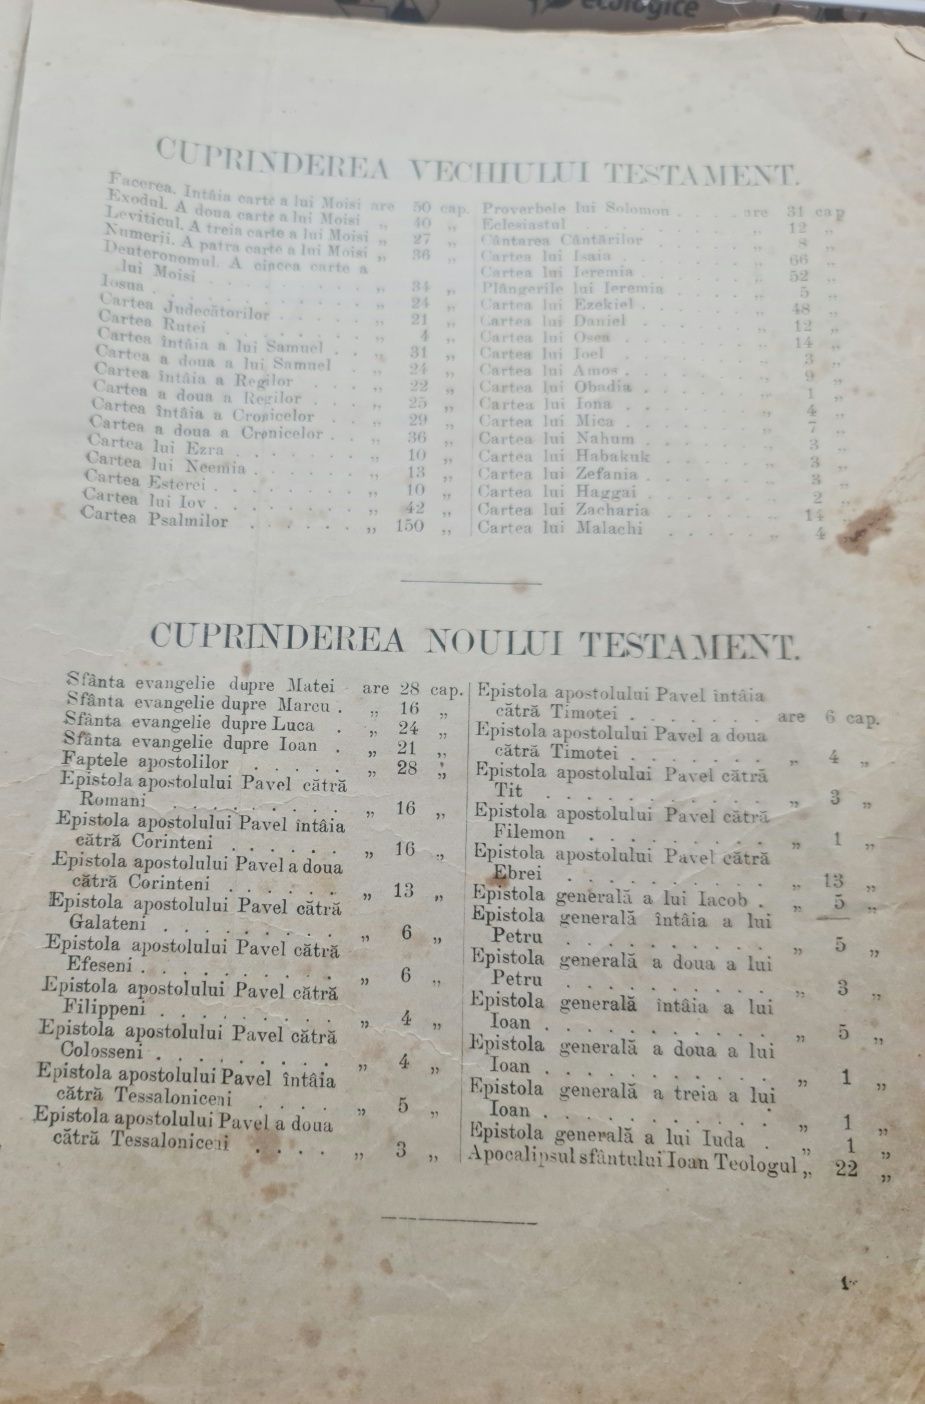 Vând Biblie 1921